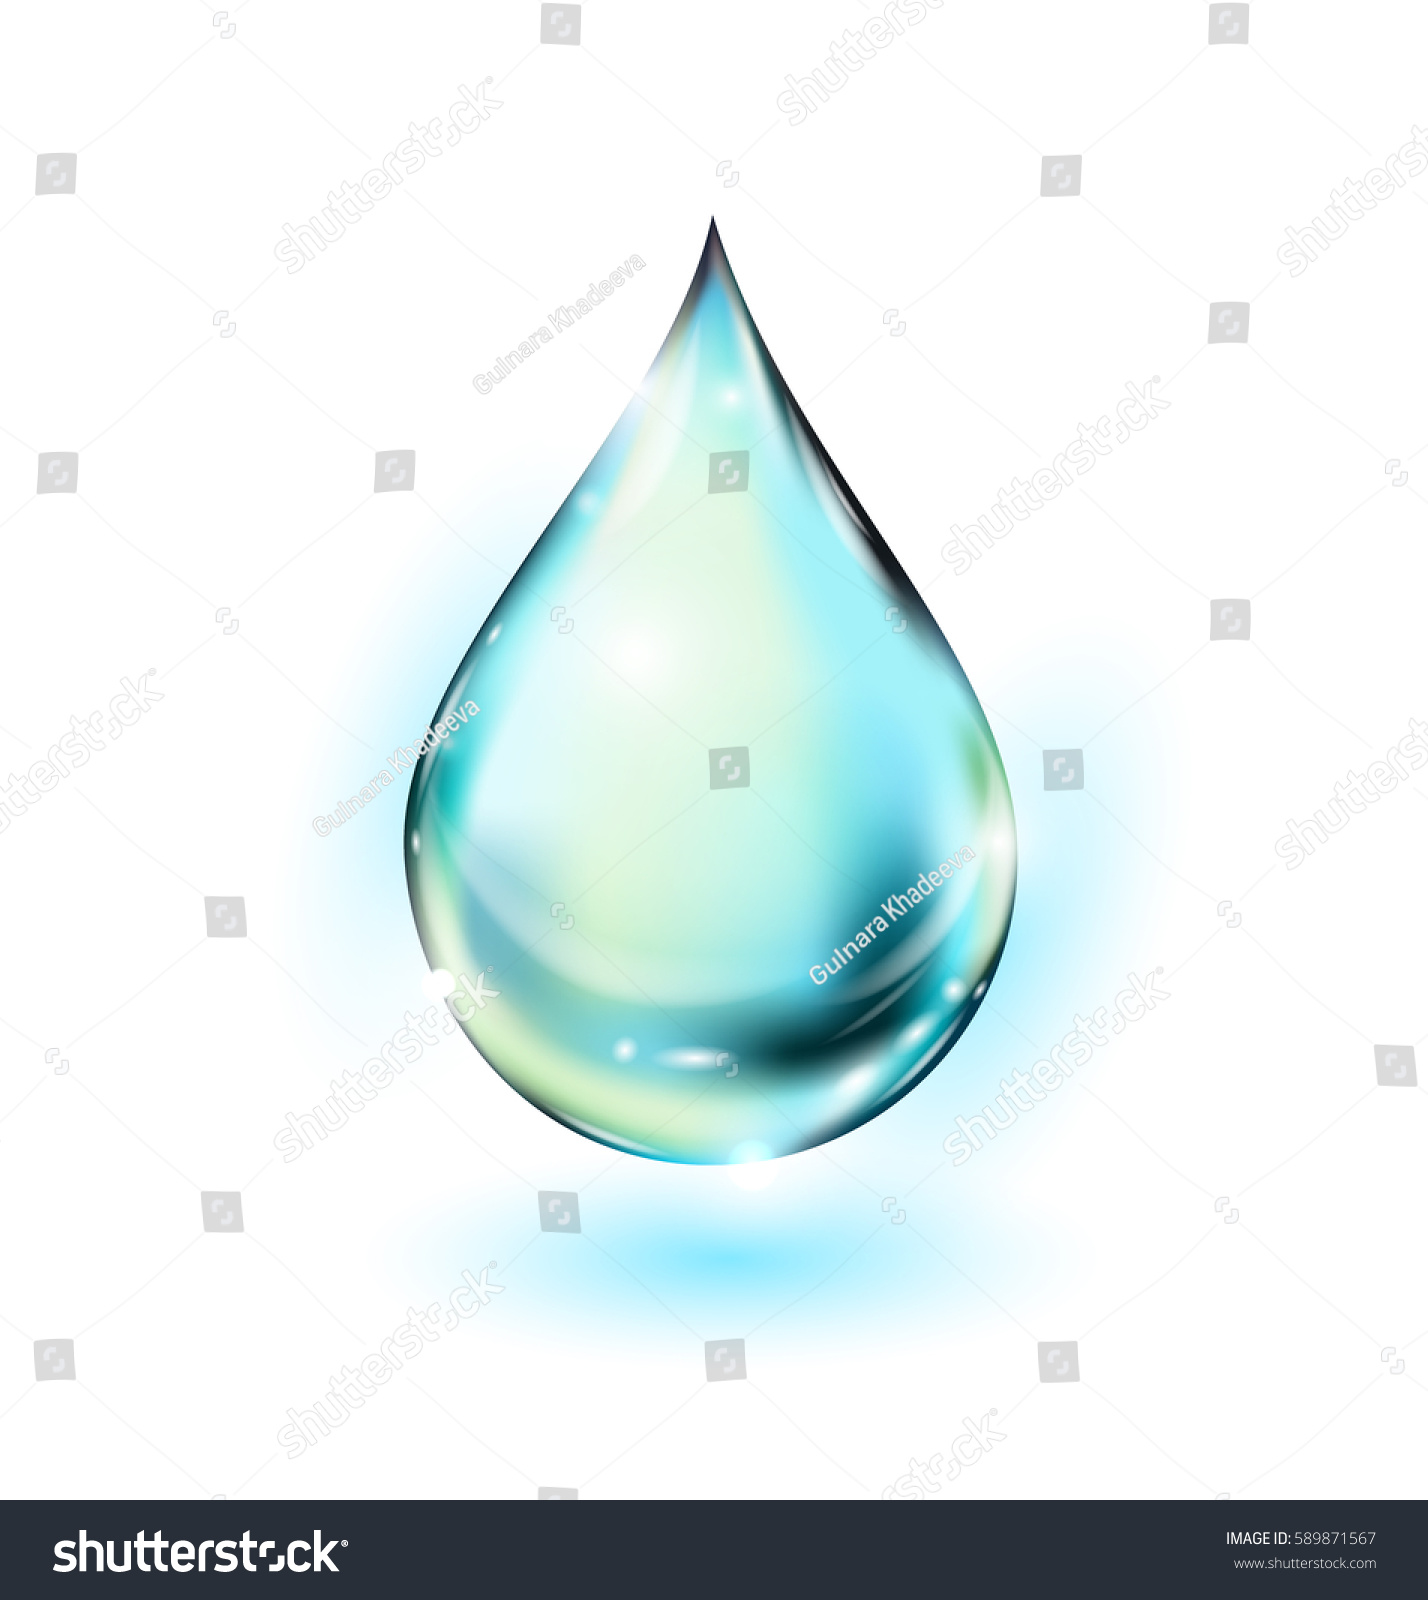 Water Drop Vector Illustration Clean Water Stock Vector 589871567 ...